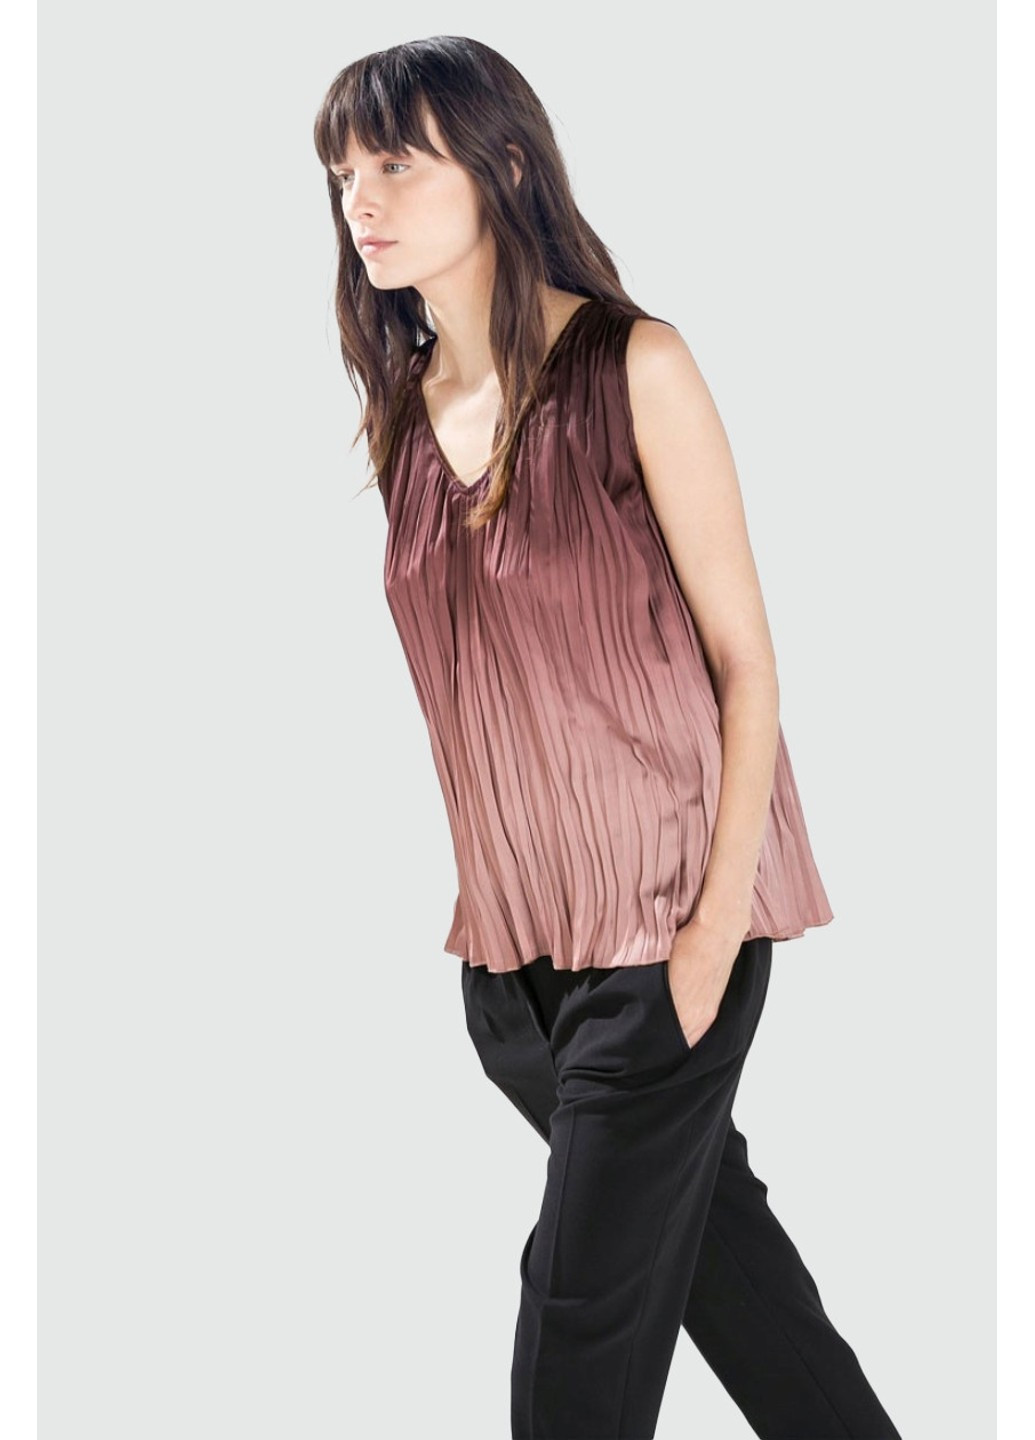 Бордовая летняя блуза 1836/226/610 Zara